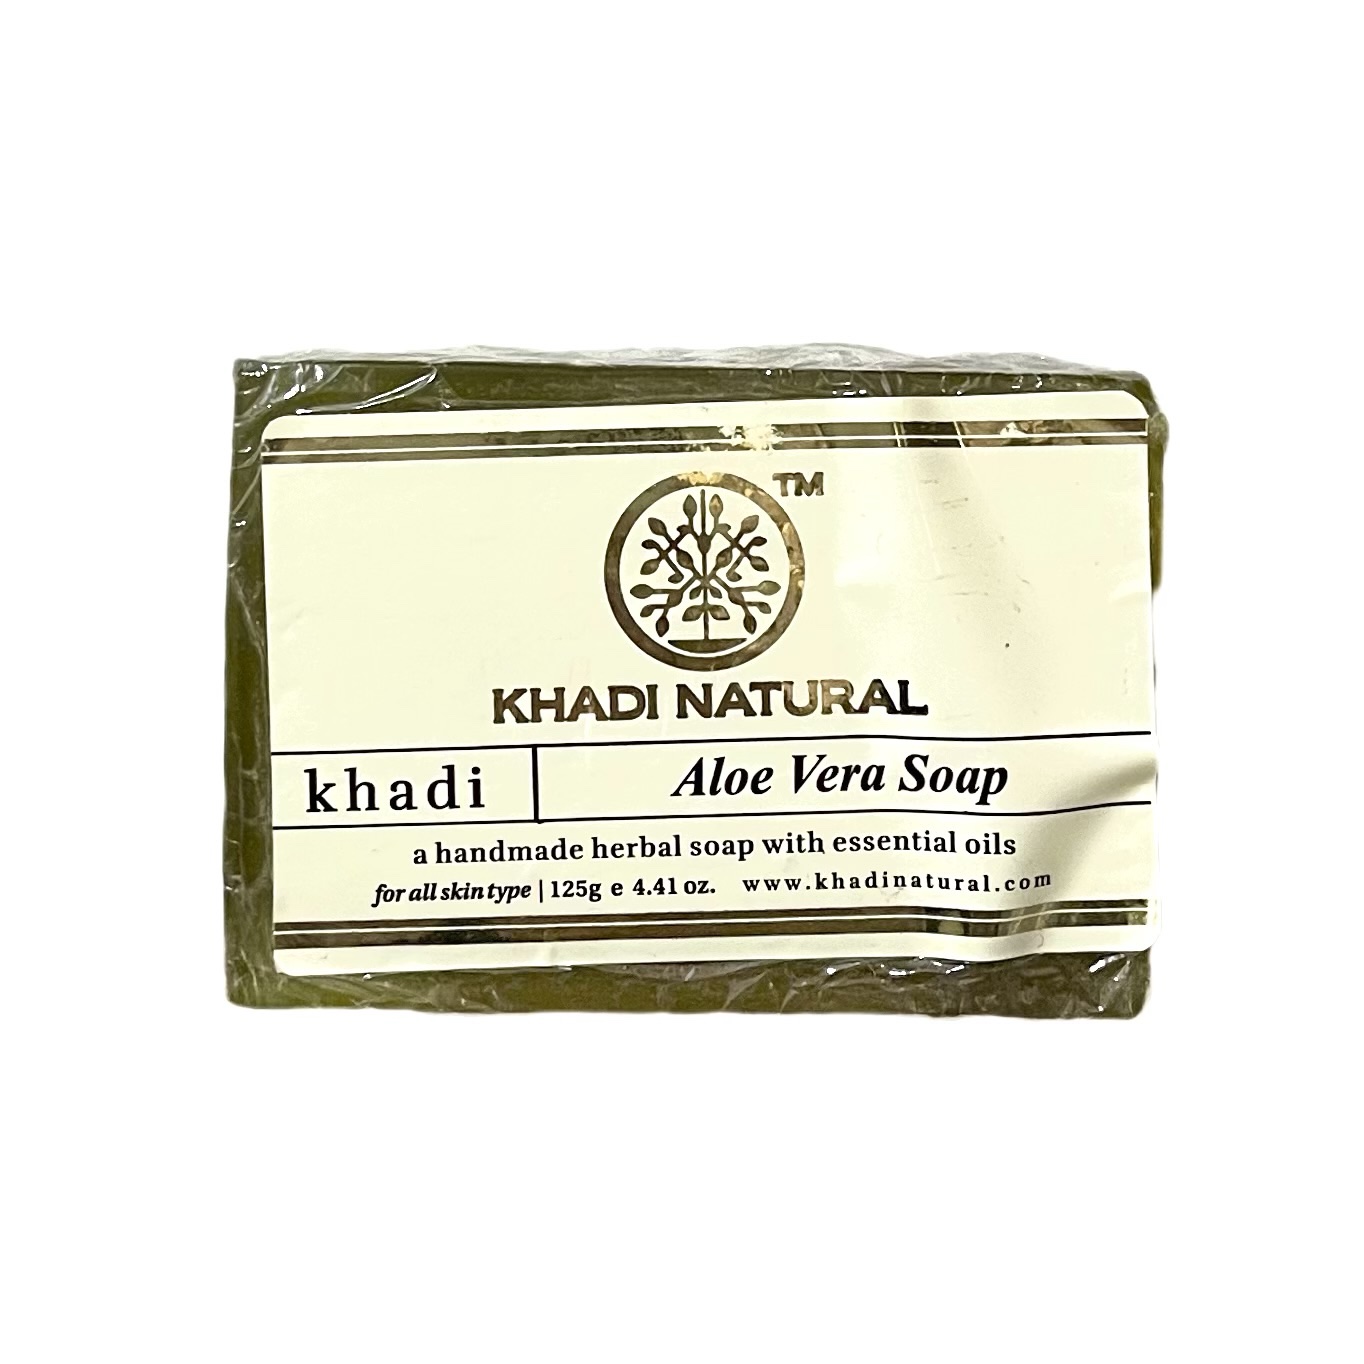 ALOEVERA Handmade Herbal Soap, Khadi Natural (АЛОЭ (алое) ВЕРА Мыло ручной работы с эфирными маслами, Кхади), 125 г.